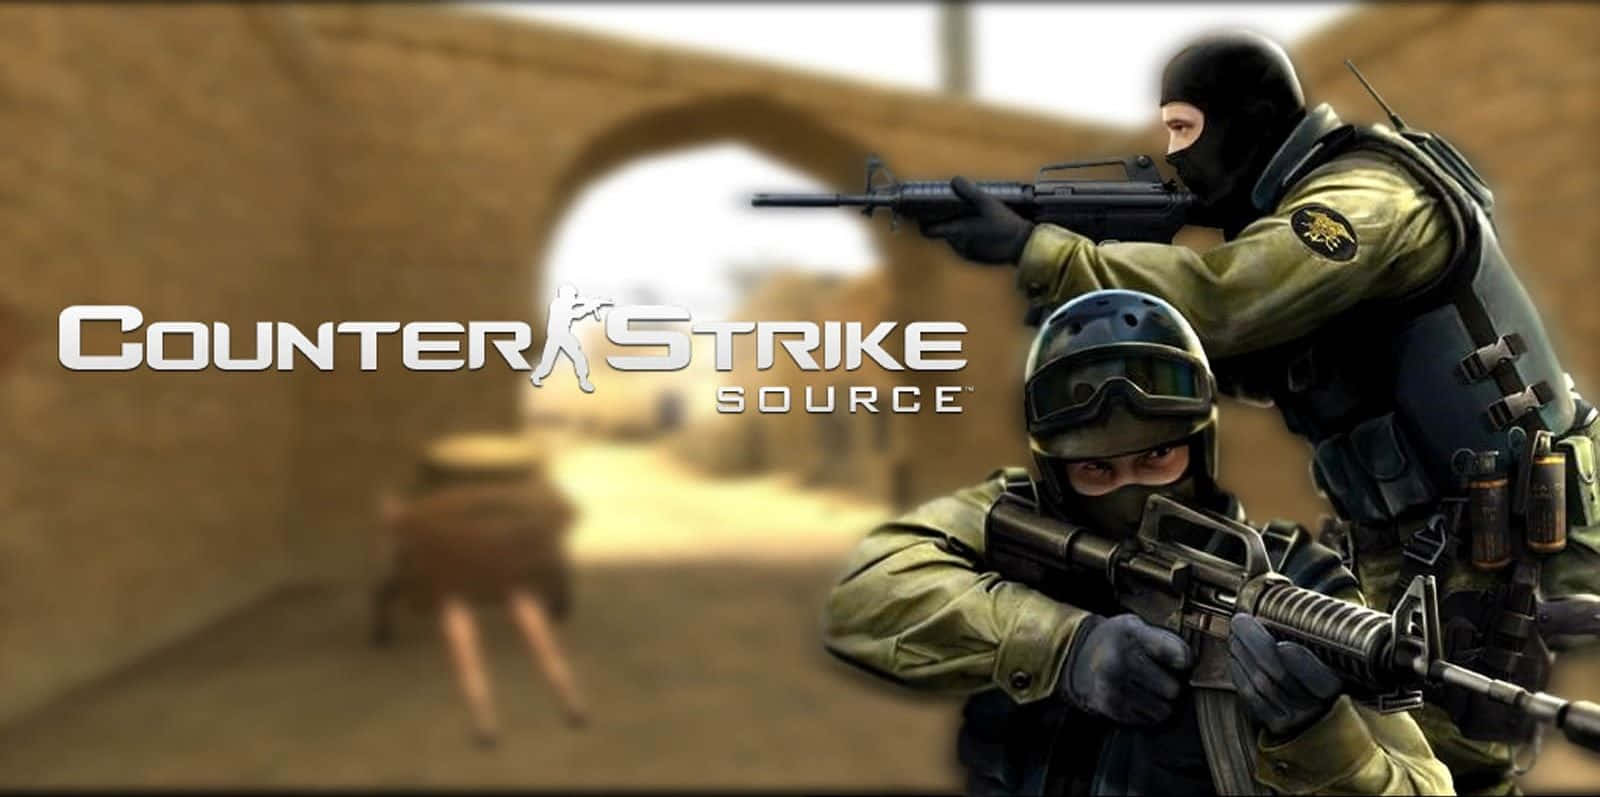 Denspännande Världen Av Counter Strike Source. Wallpaper